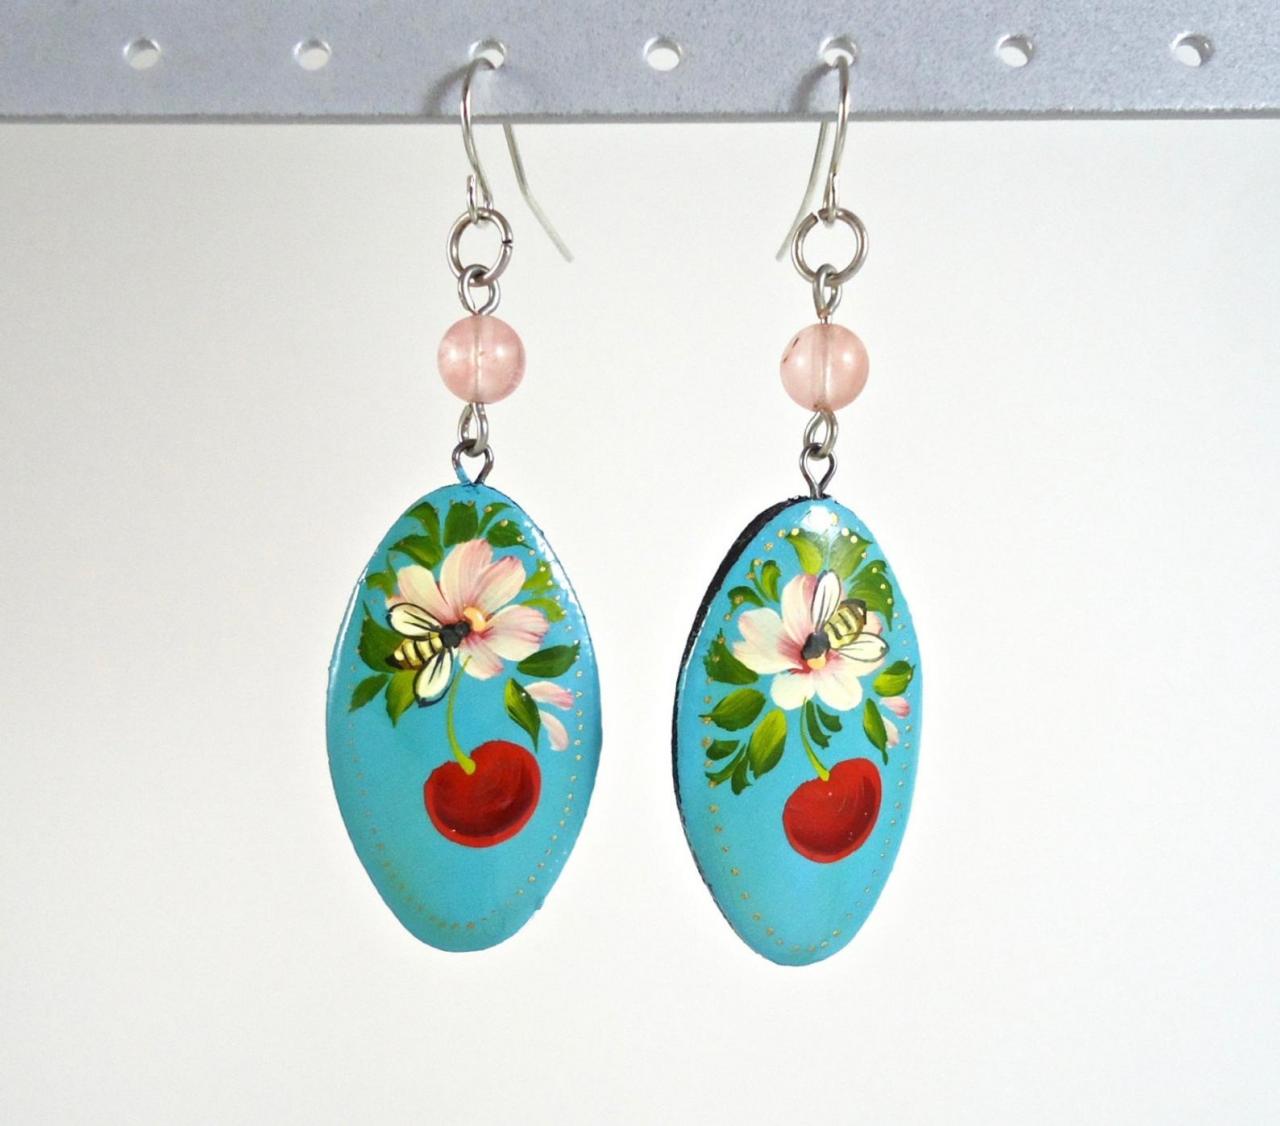 Wooden Jewelry - Boho Earrings - Flower Earrings - Floral Earrings - Wooden Earrings - Wood Jewelry - Painted Wood Earrings - Bee Jewelry